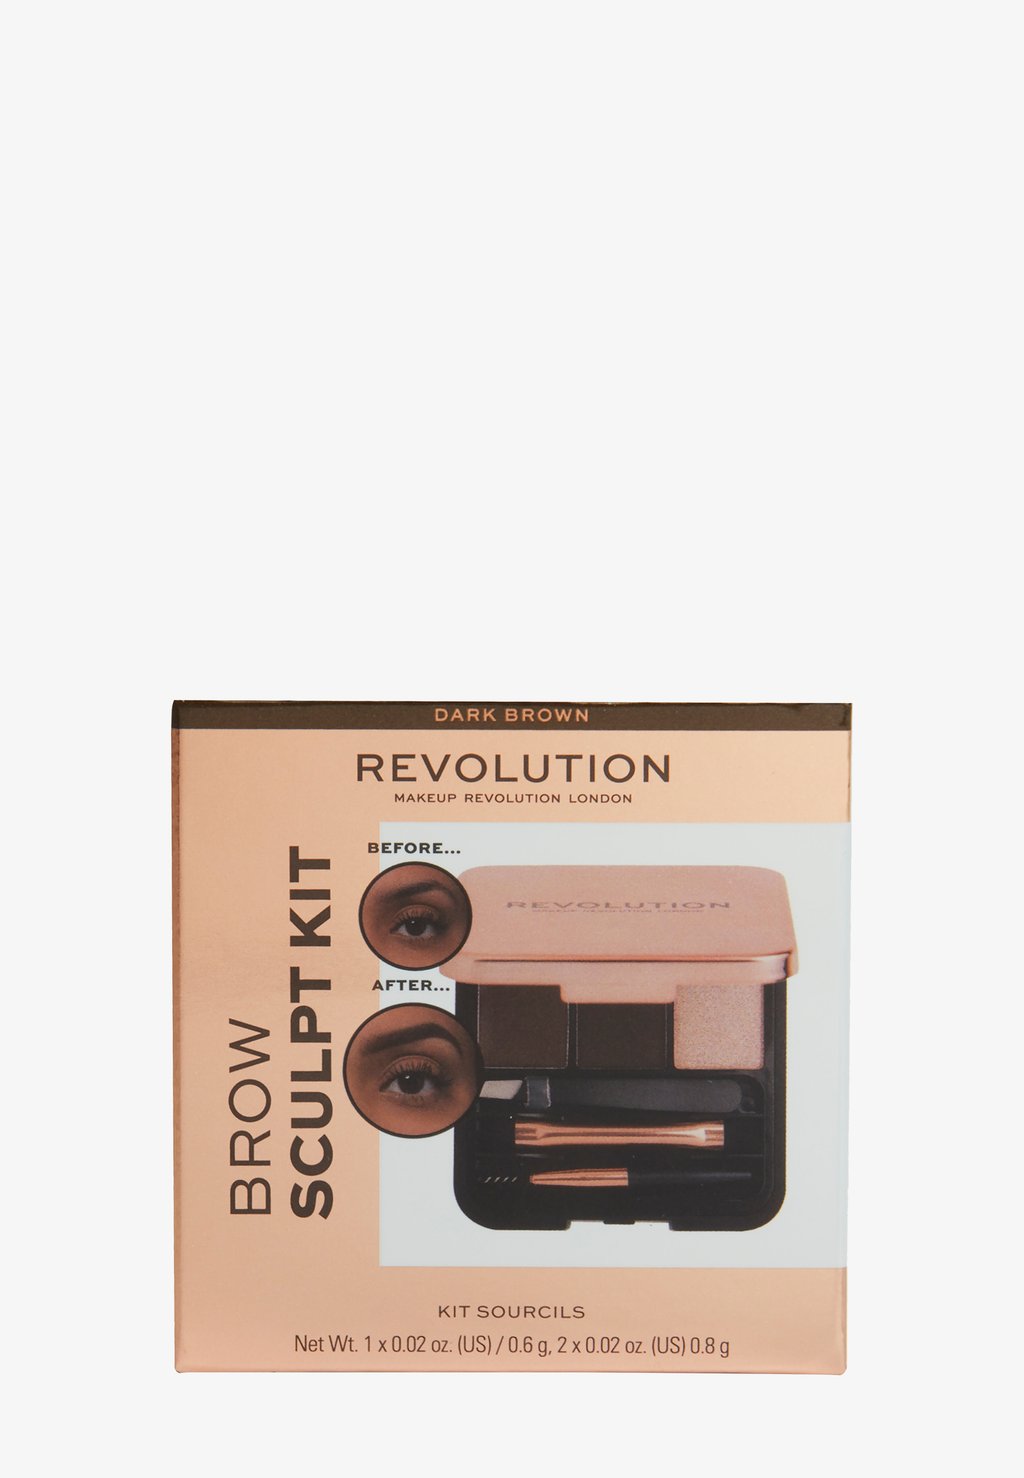 Набор для макияжа Brow Sculpt Kit Makeup Revolution, цвет dark